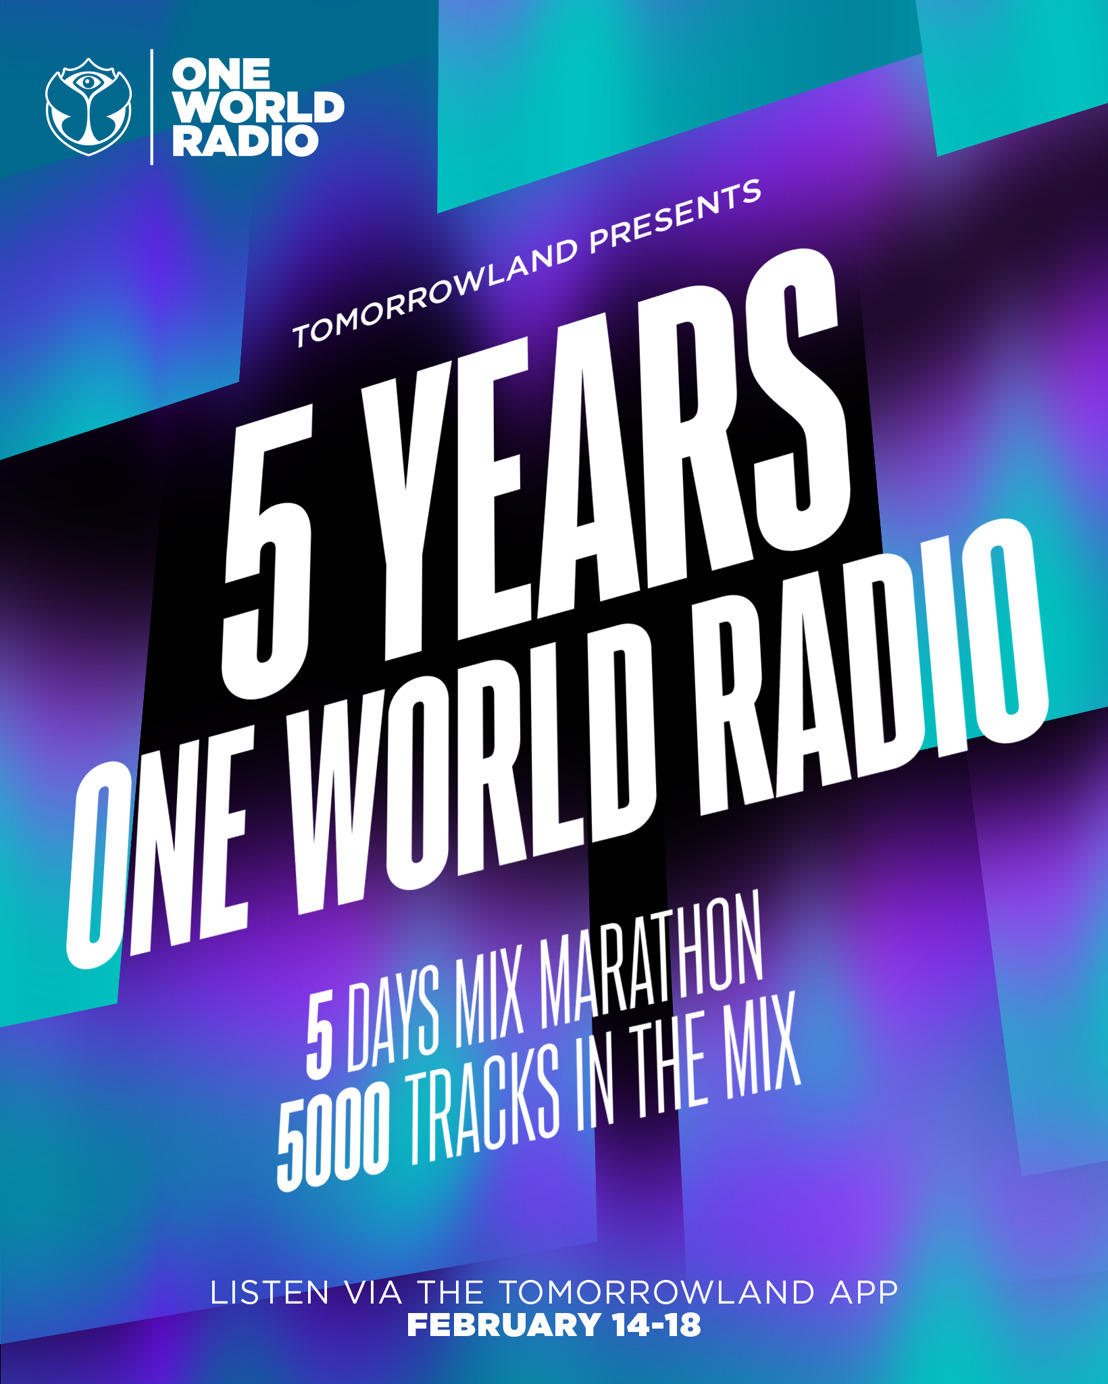 One World Radio is celebrating its 5-year anniversary